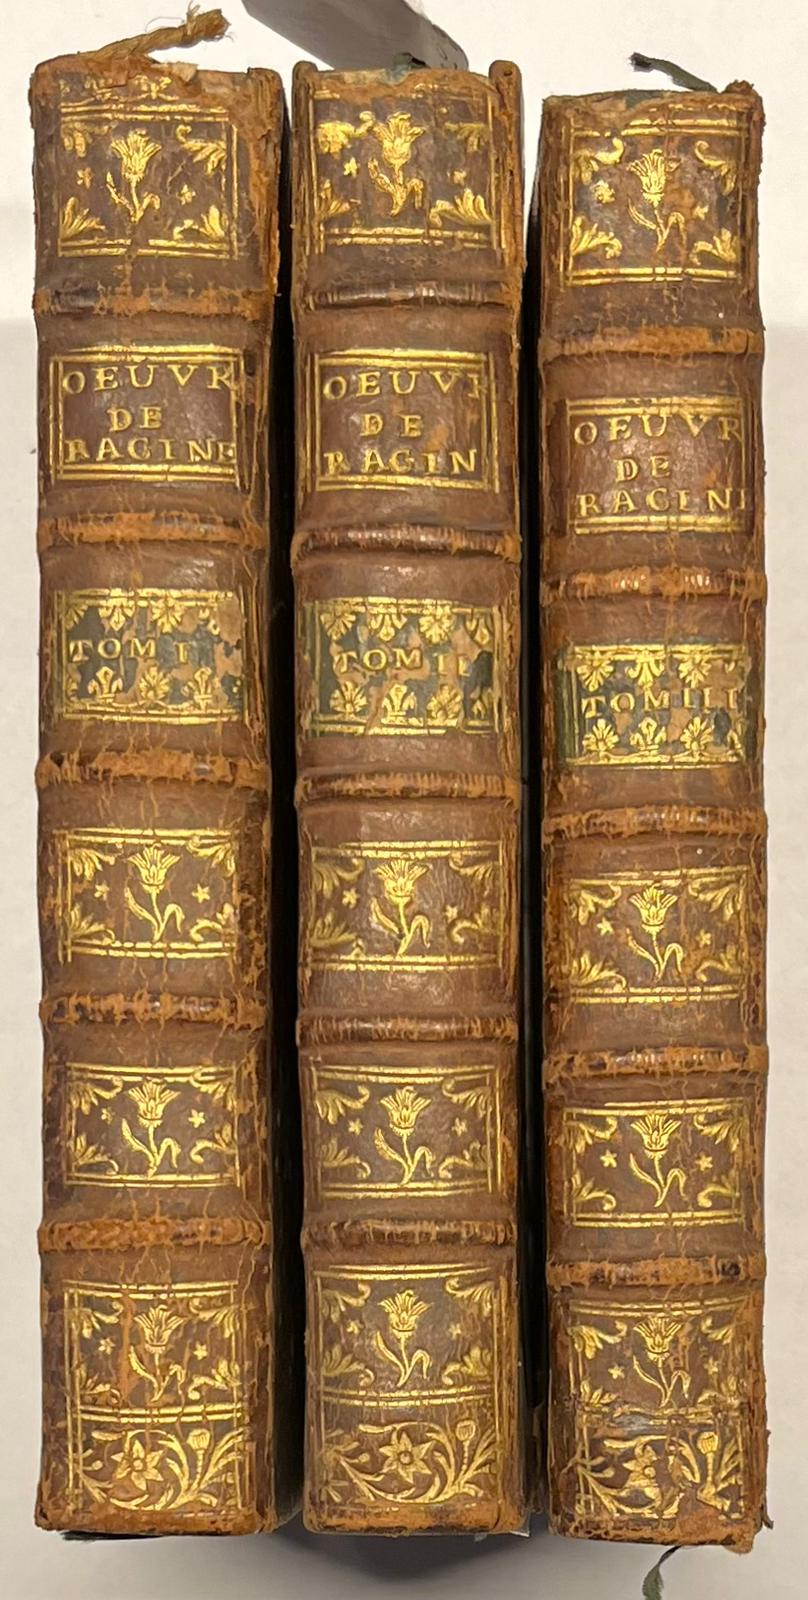 Set of 3, 1754, Racine | Oeuvres de Racine, nouvelle edition, avec figures. A Amsterdam, Chez Arkeste'e & Merkus, 1754, 3 vols.